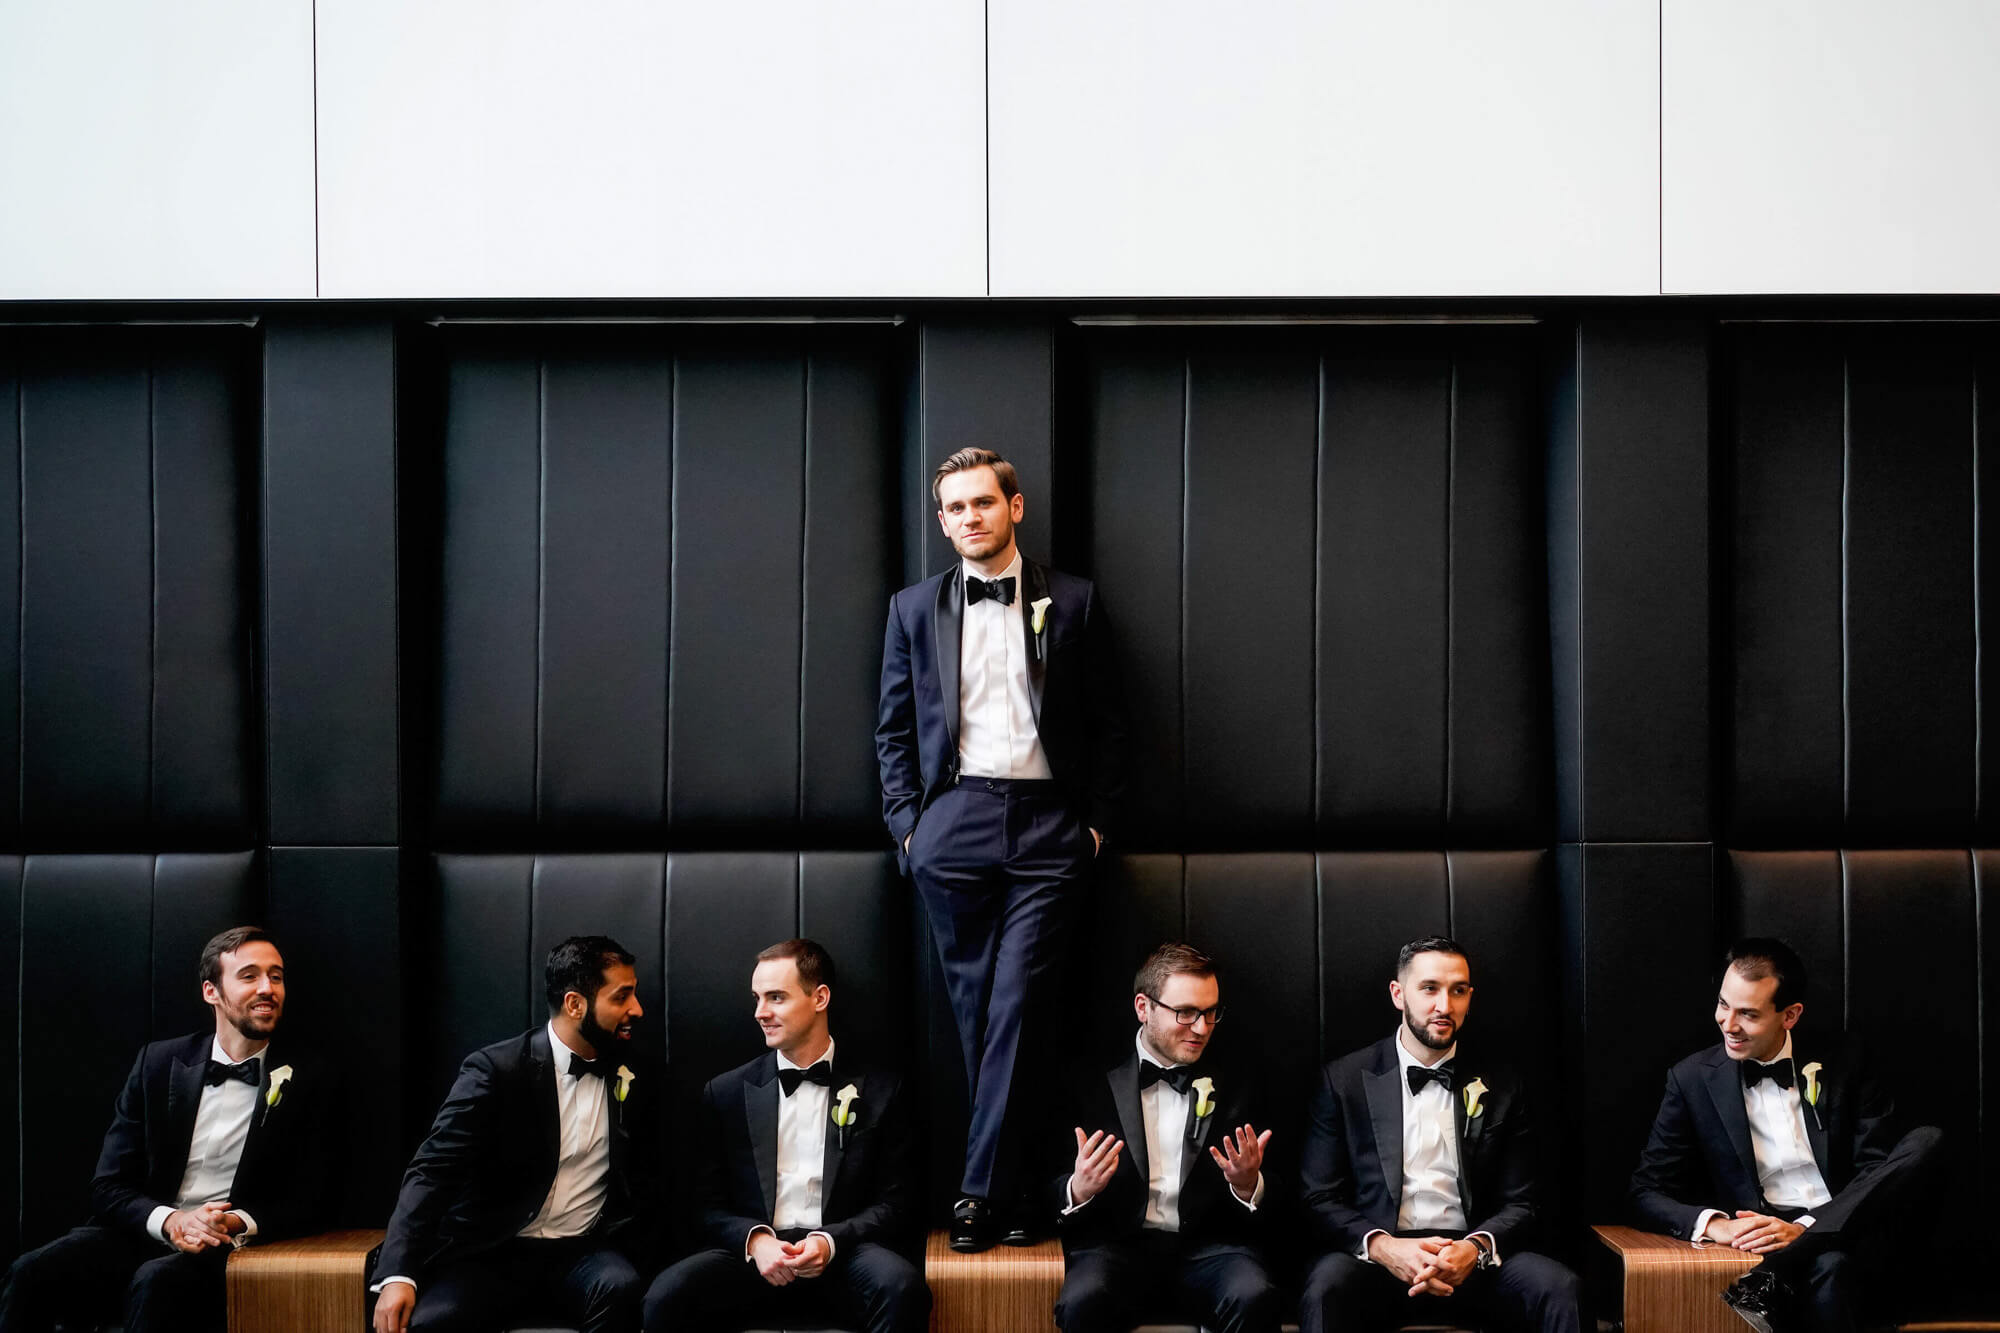 stylish wedding photography groomsmen portrait of wedding party by boston wedding photographer kate mcelwee